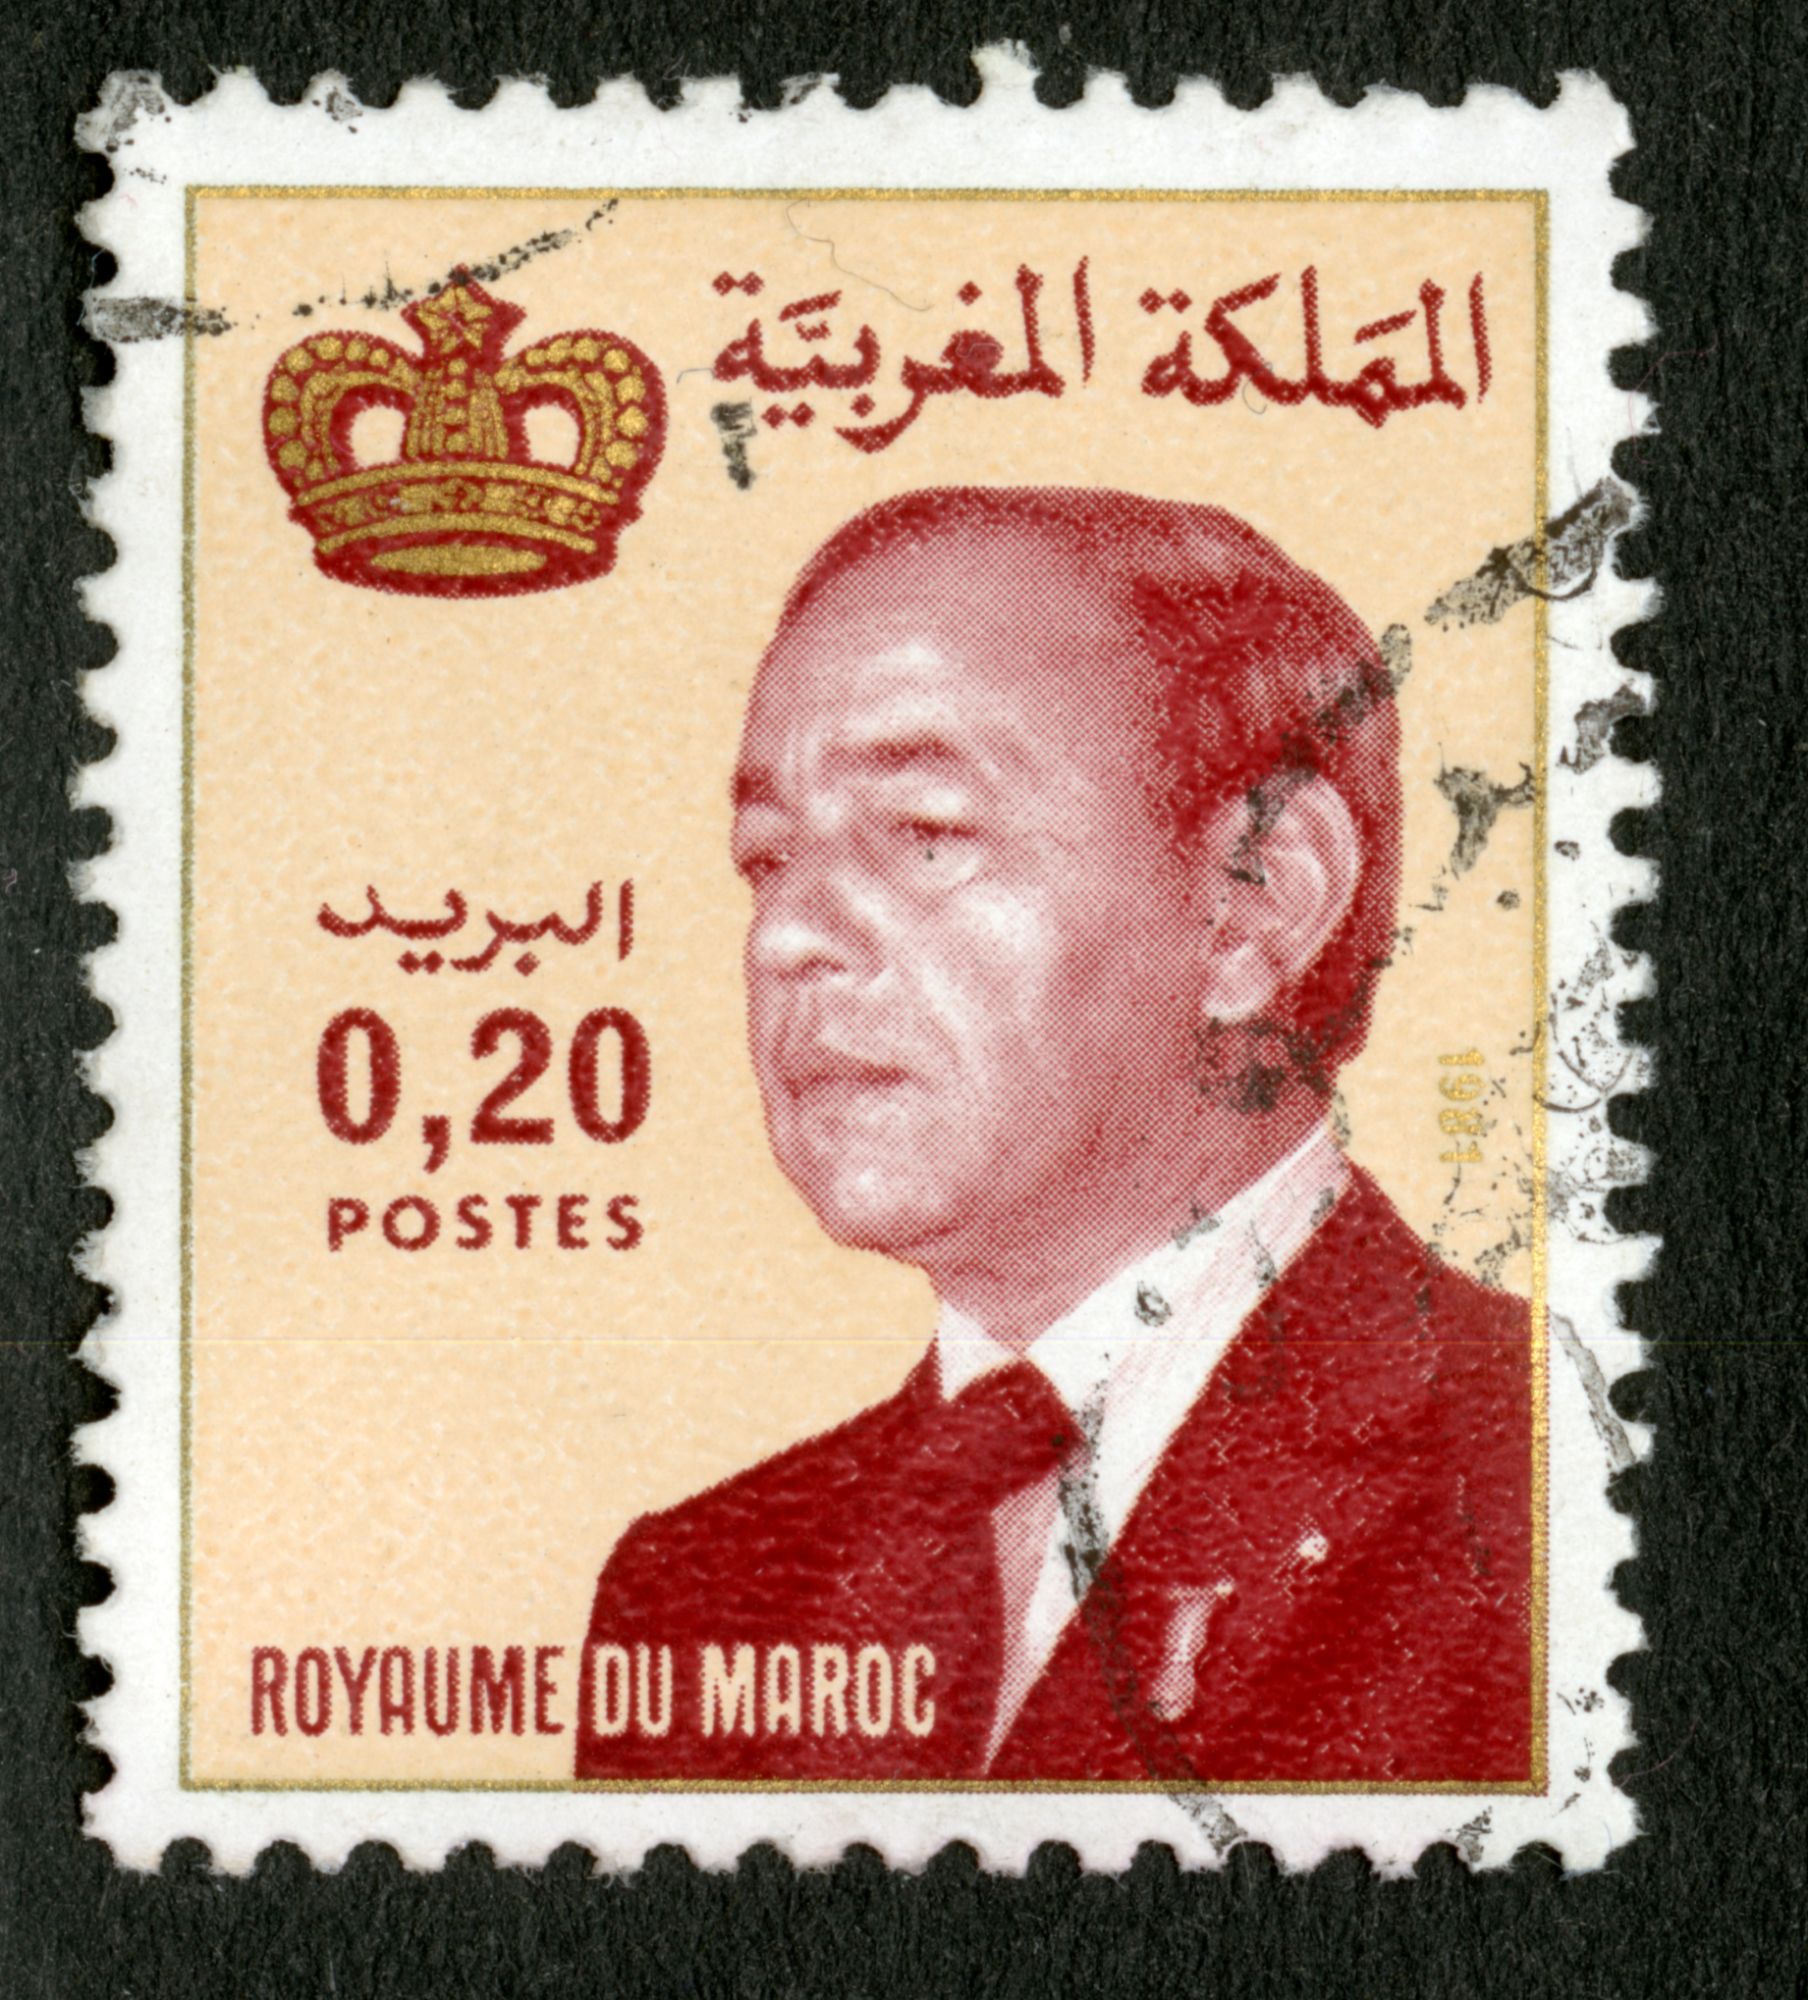 Timbre Oblitéré Royaume Du Maroc, Postes, 0.20, 1981